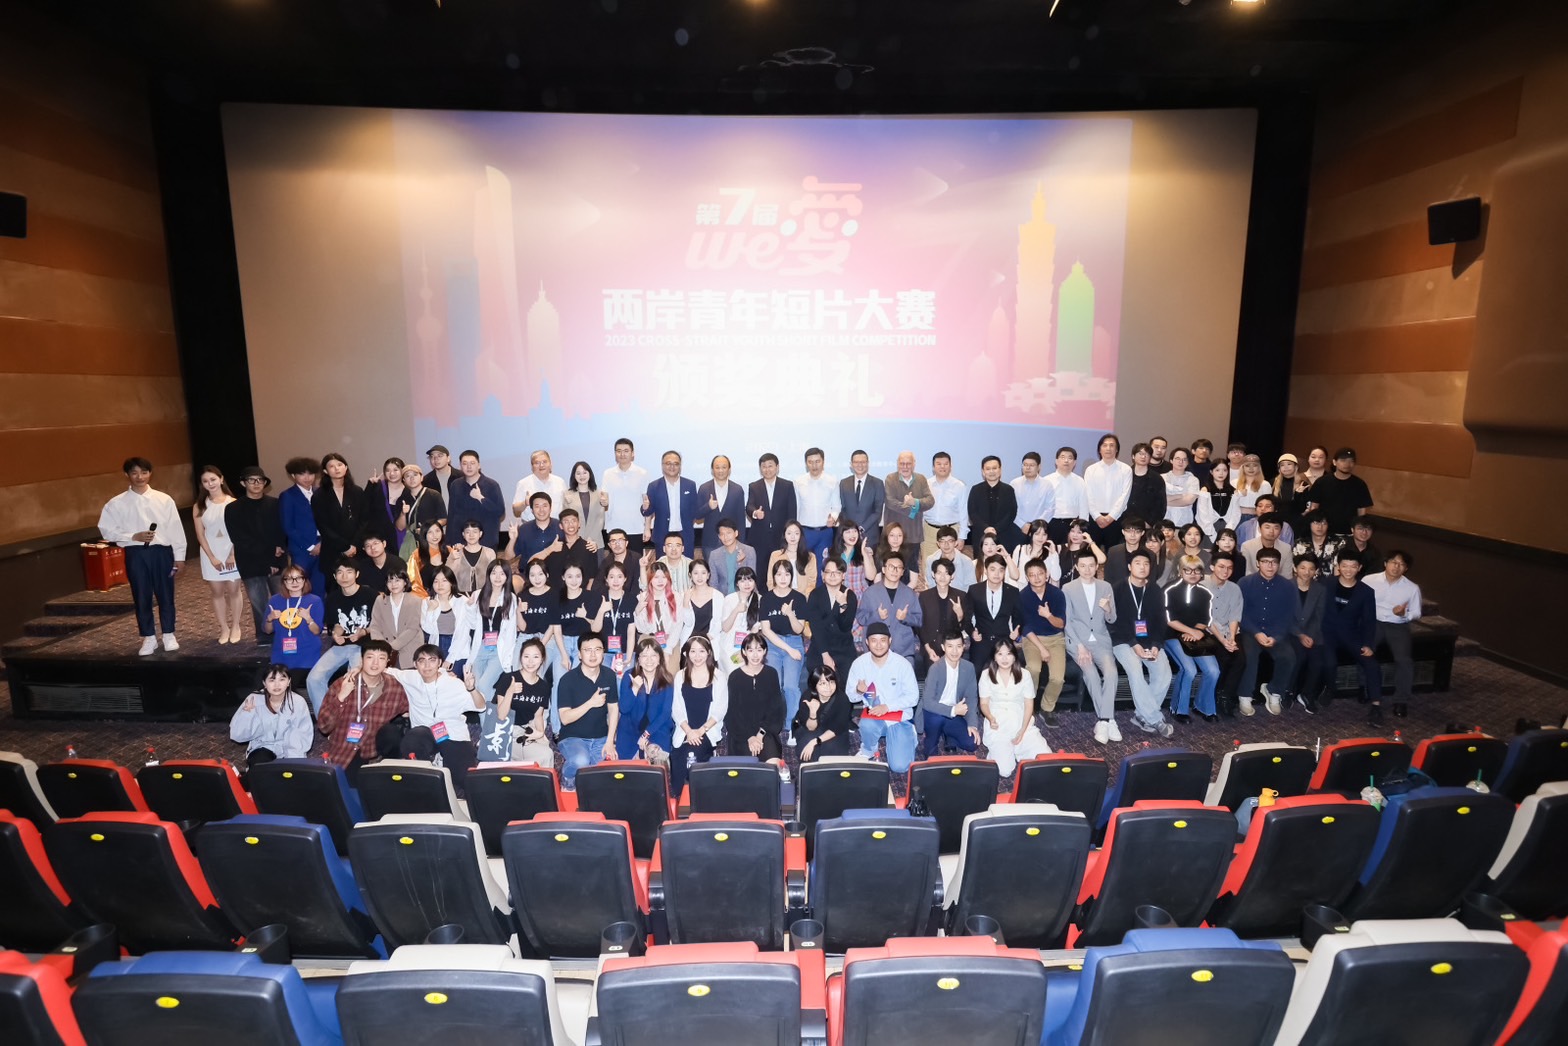 ▲第七屆We愛兩岸青年短片大賽頒獎典禮23日在上海正式舉行。（照片提供/We愛兩岸青年短片大賽）